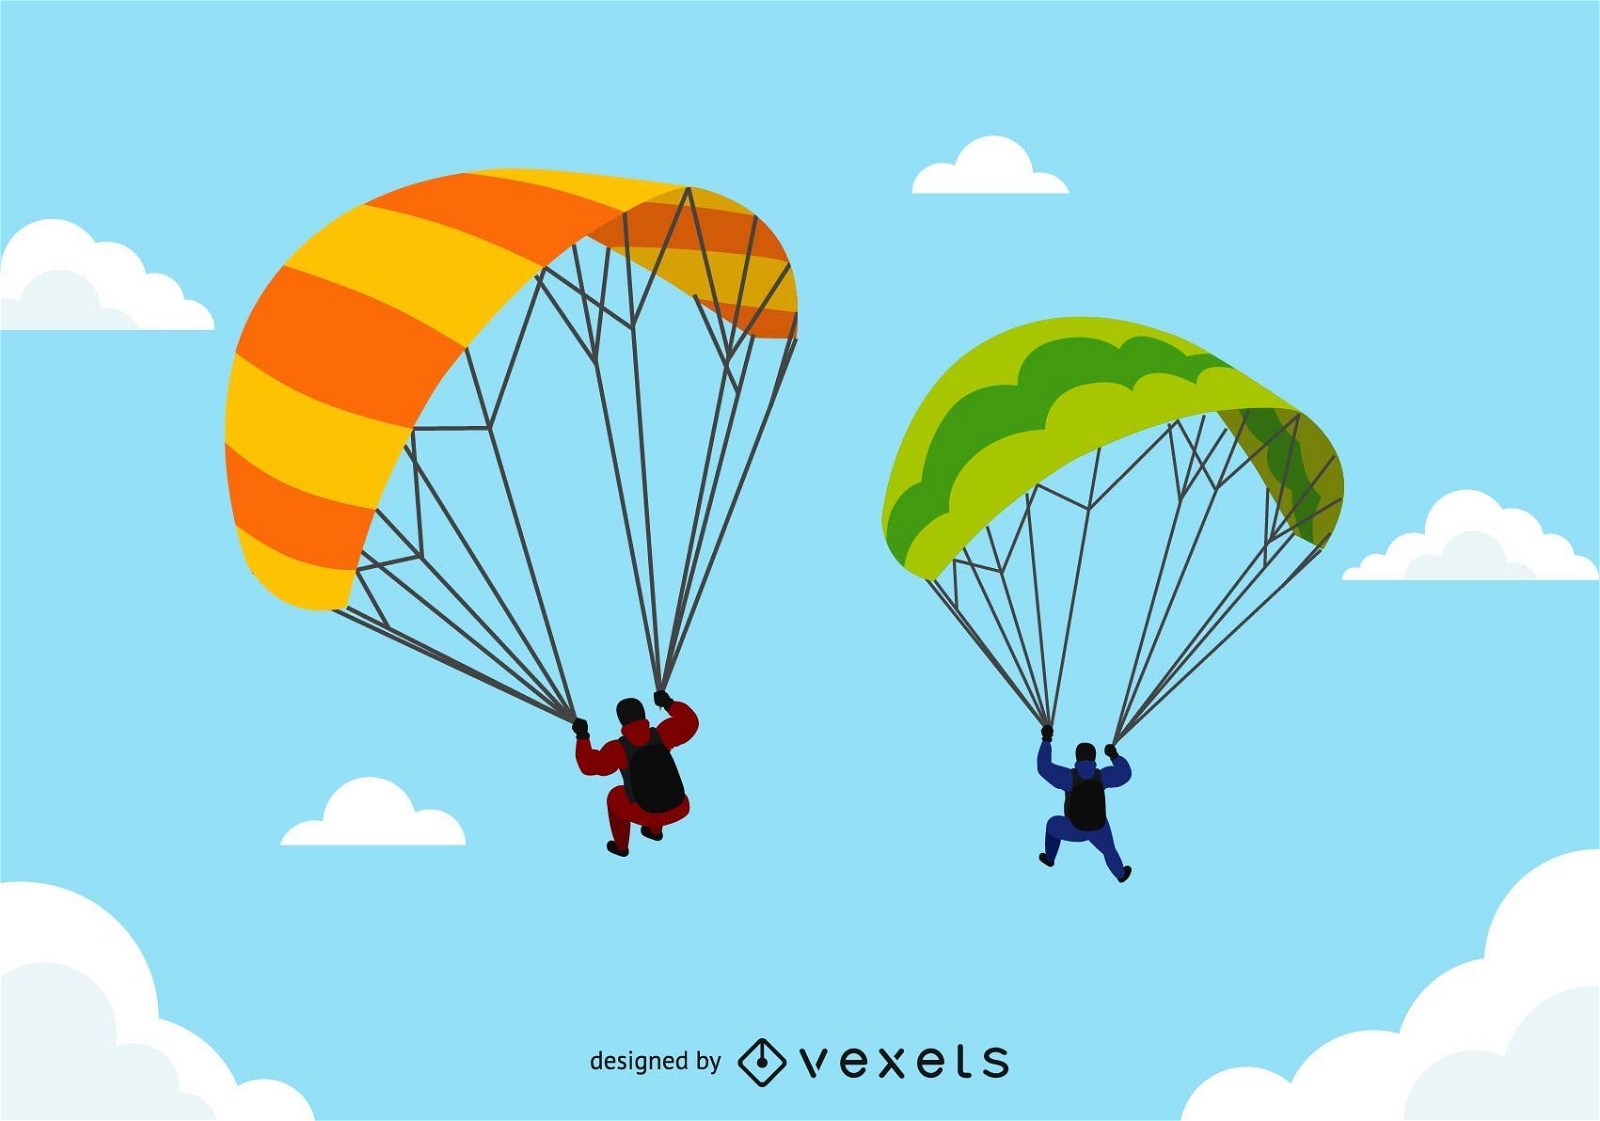 Tandem Paragliders in flight